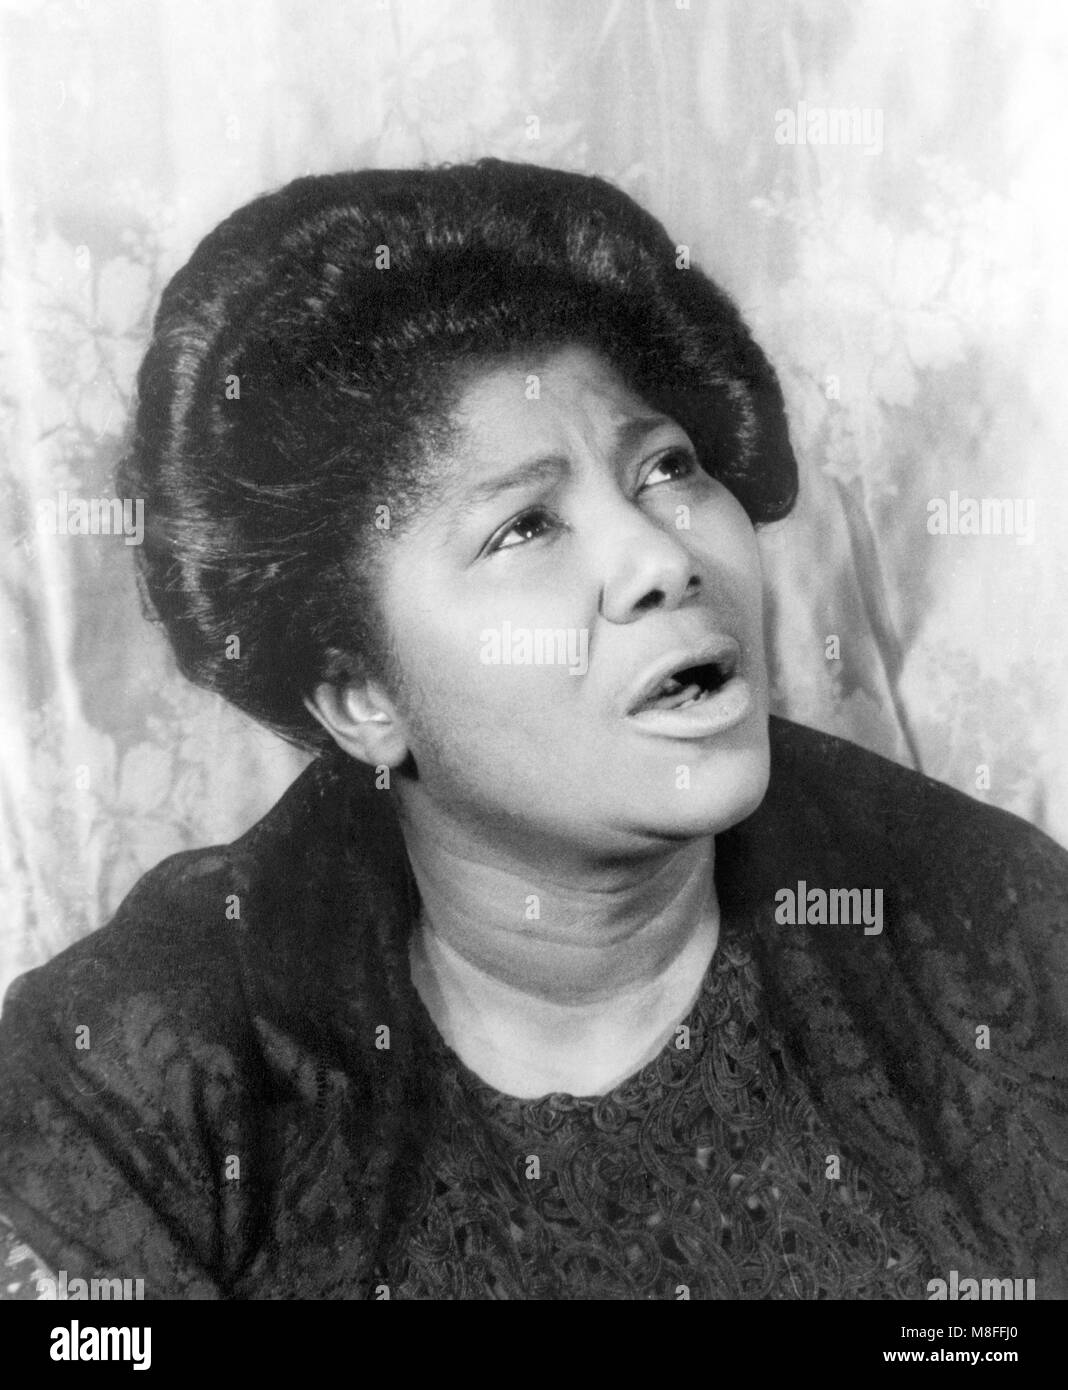 Mahalia Jackson (1911-1972). Portrait of the American gospel singer by Carl Van Vechten, 1962. Stock Photo